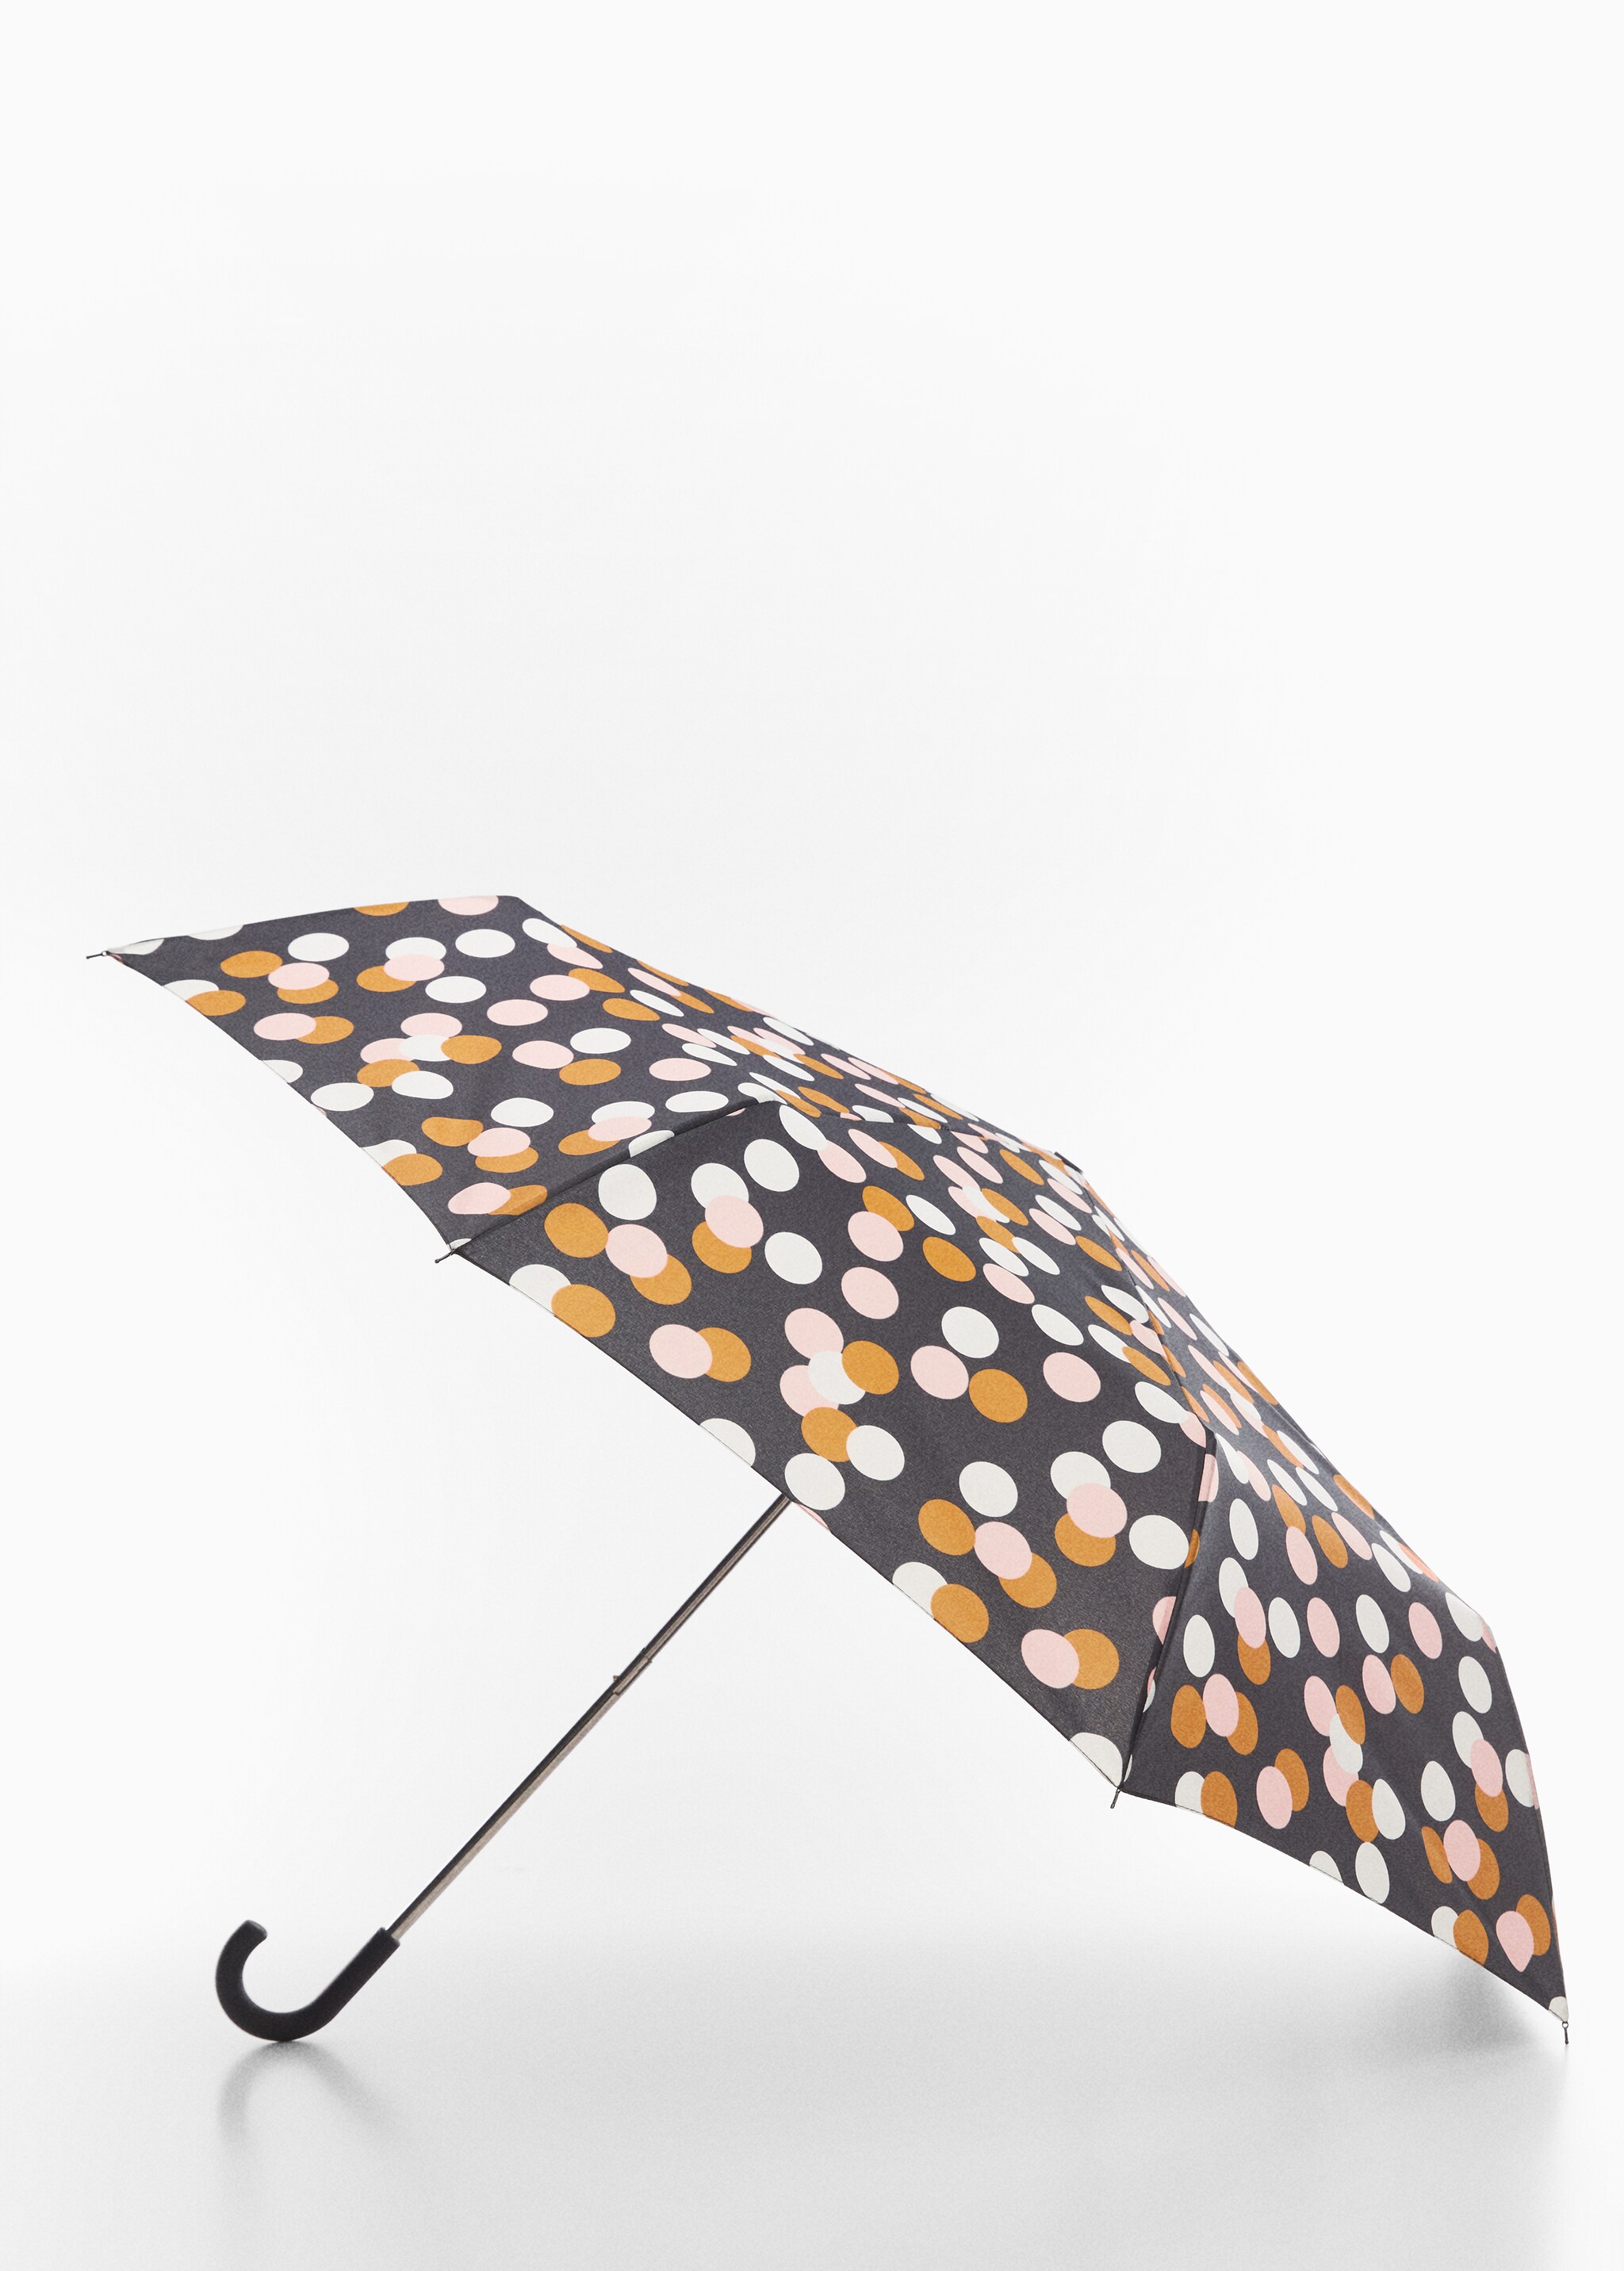 Polka-dot folding umbrella - Medium plane